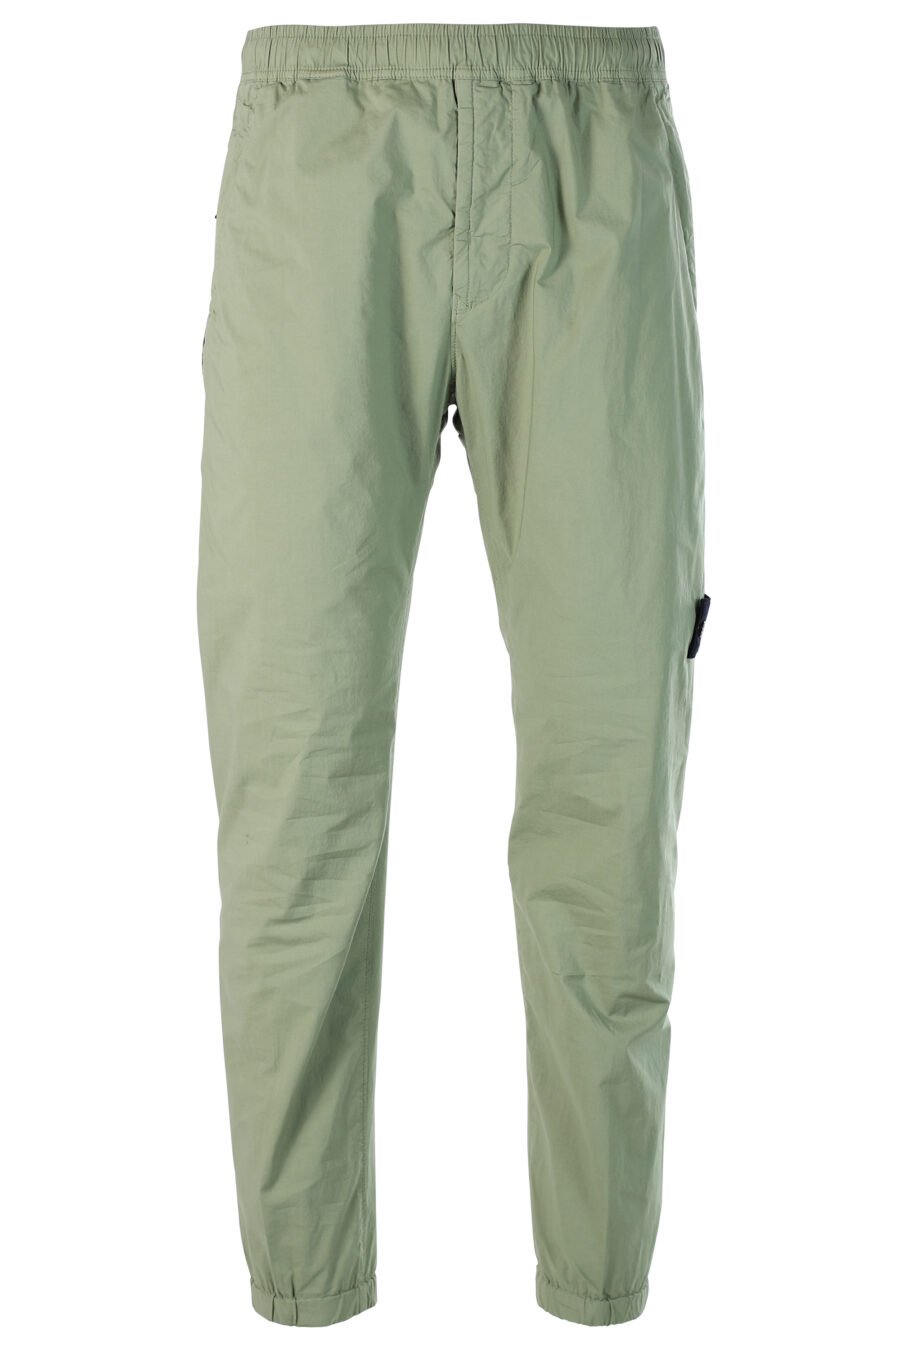 Pantalon cargo vert militaire avec patch - 8052572549175